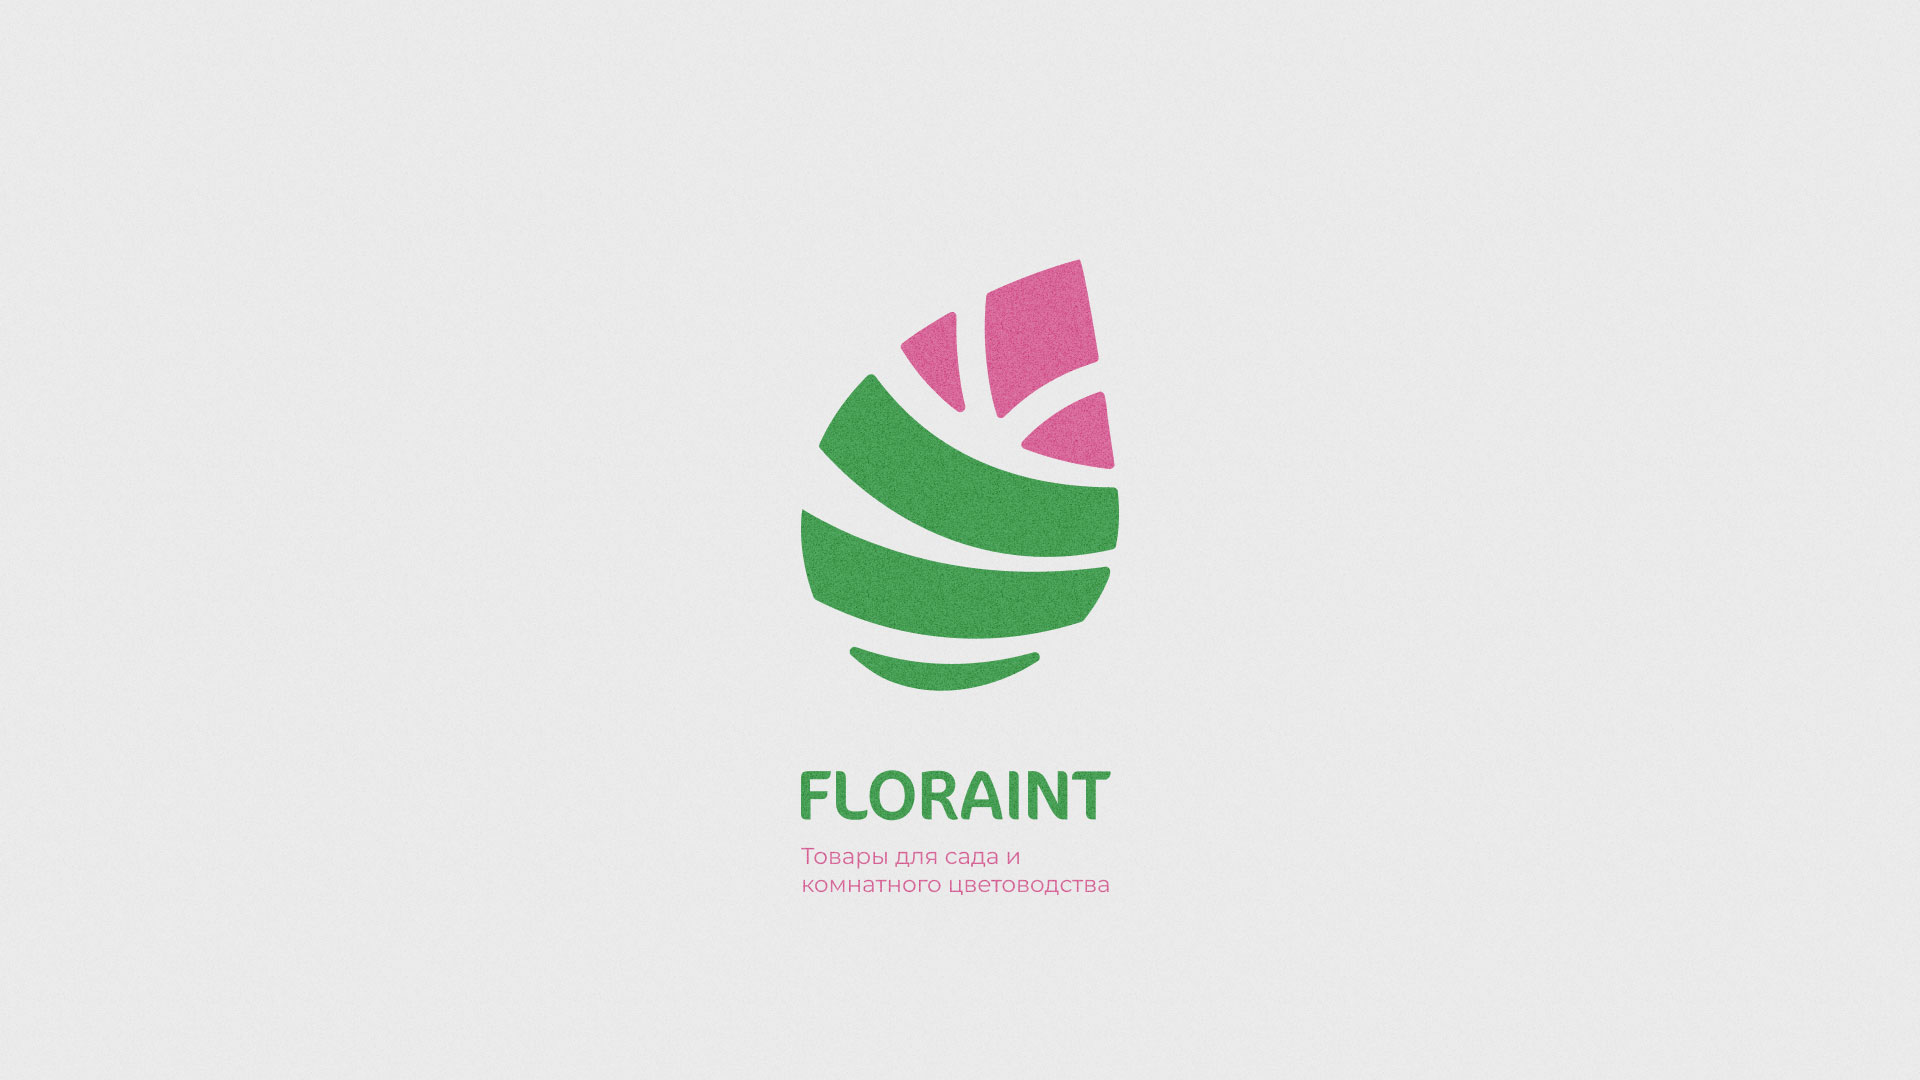 Разработка оформления профиля Instagram для магазина «Floraint» в 